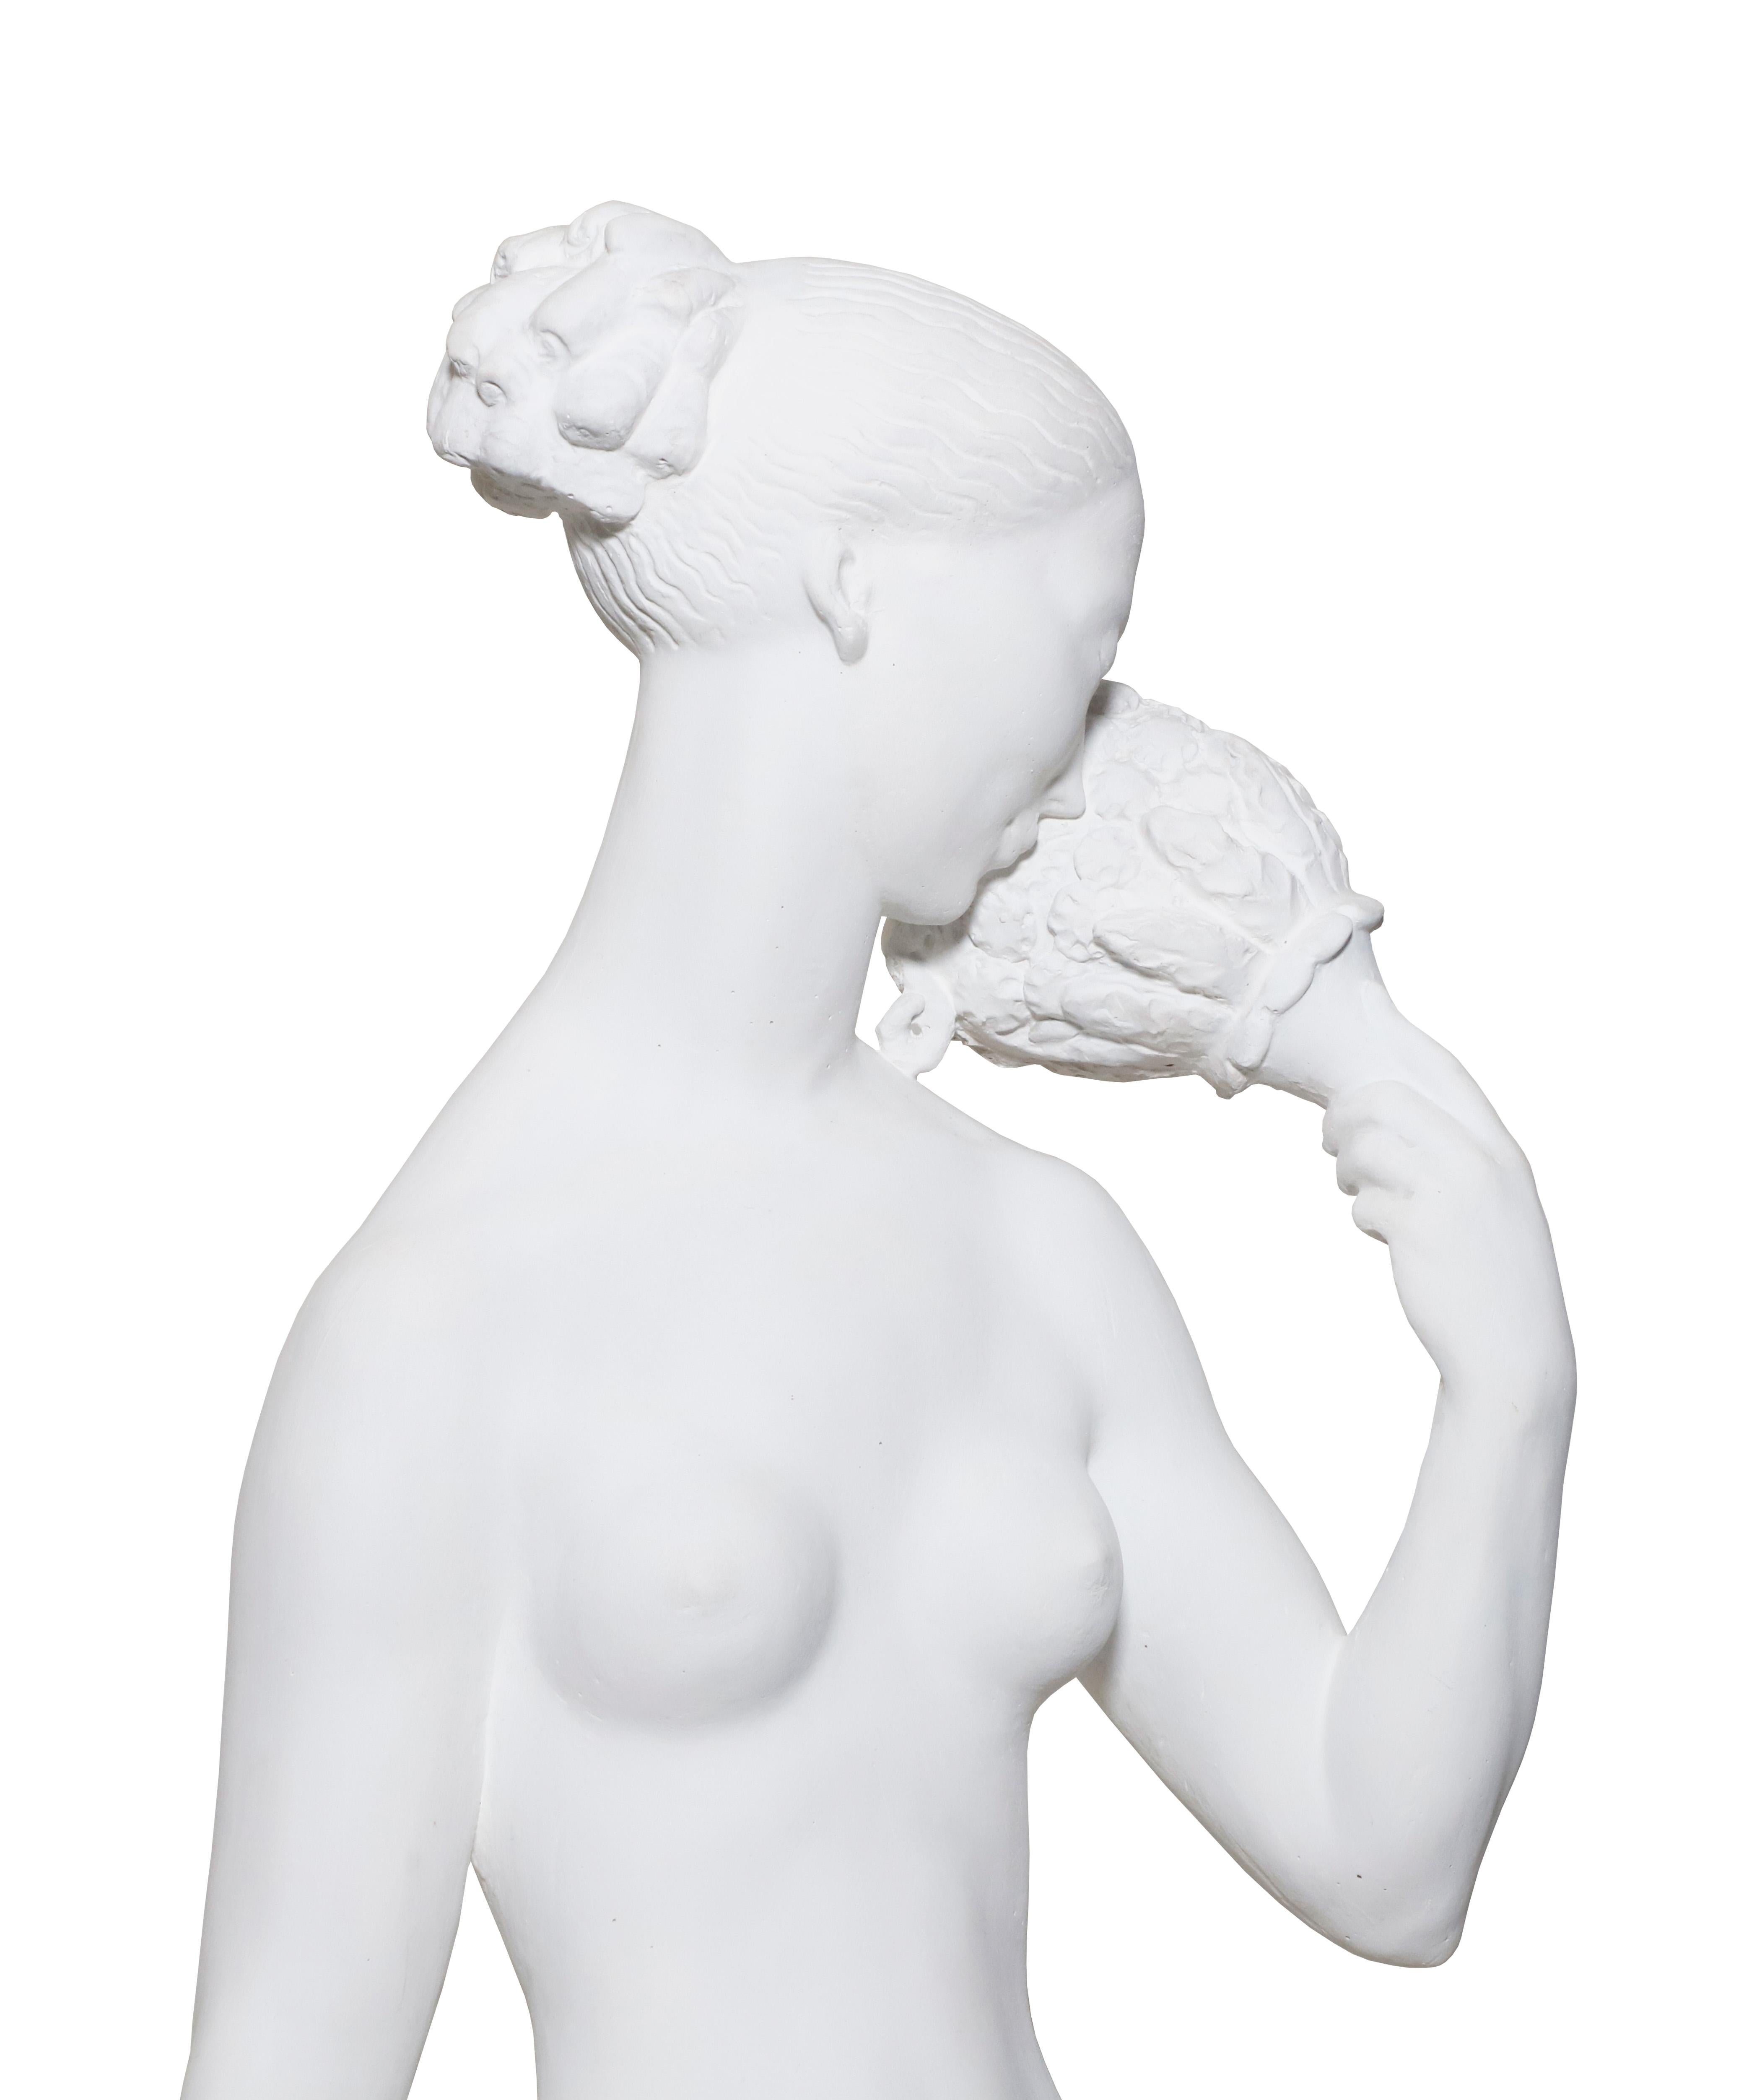 Gipsskulptur des bekannten schwedischen Bildhauers Carl Milles.  Ca. 1920er Jahre. Detaillierte Skulptur einer nackten Frau und eines Hundes. 

Eigentum des geschätzten Innenarchitekten Juan Montoya. Juan Montoya ist einer der renommiertesten und